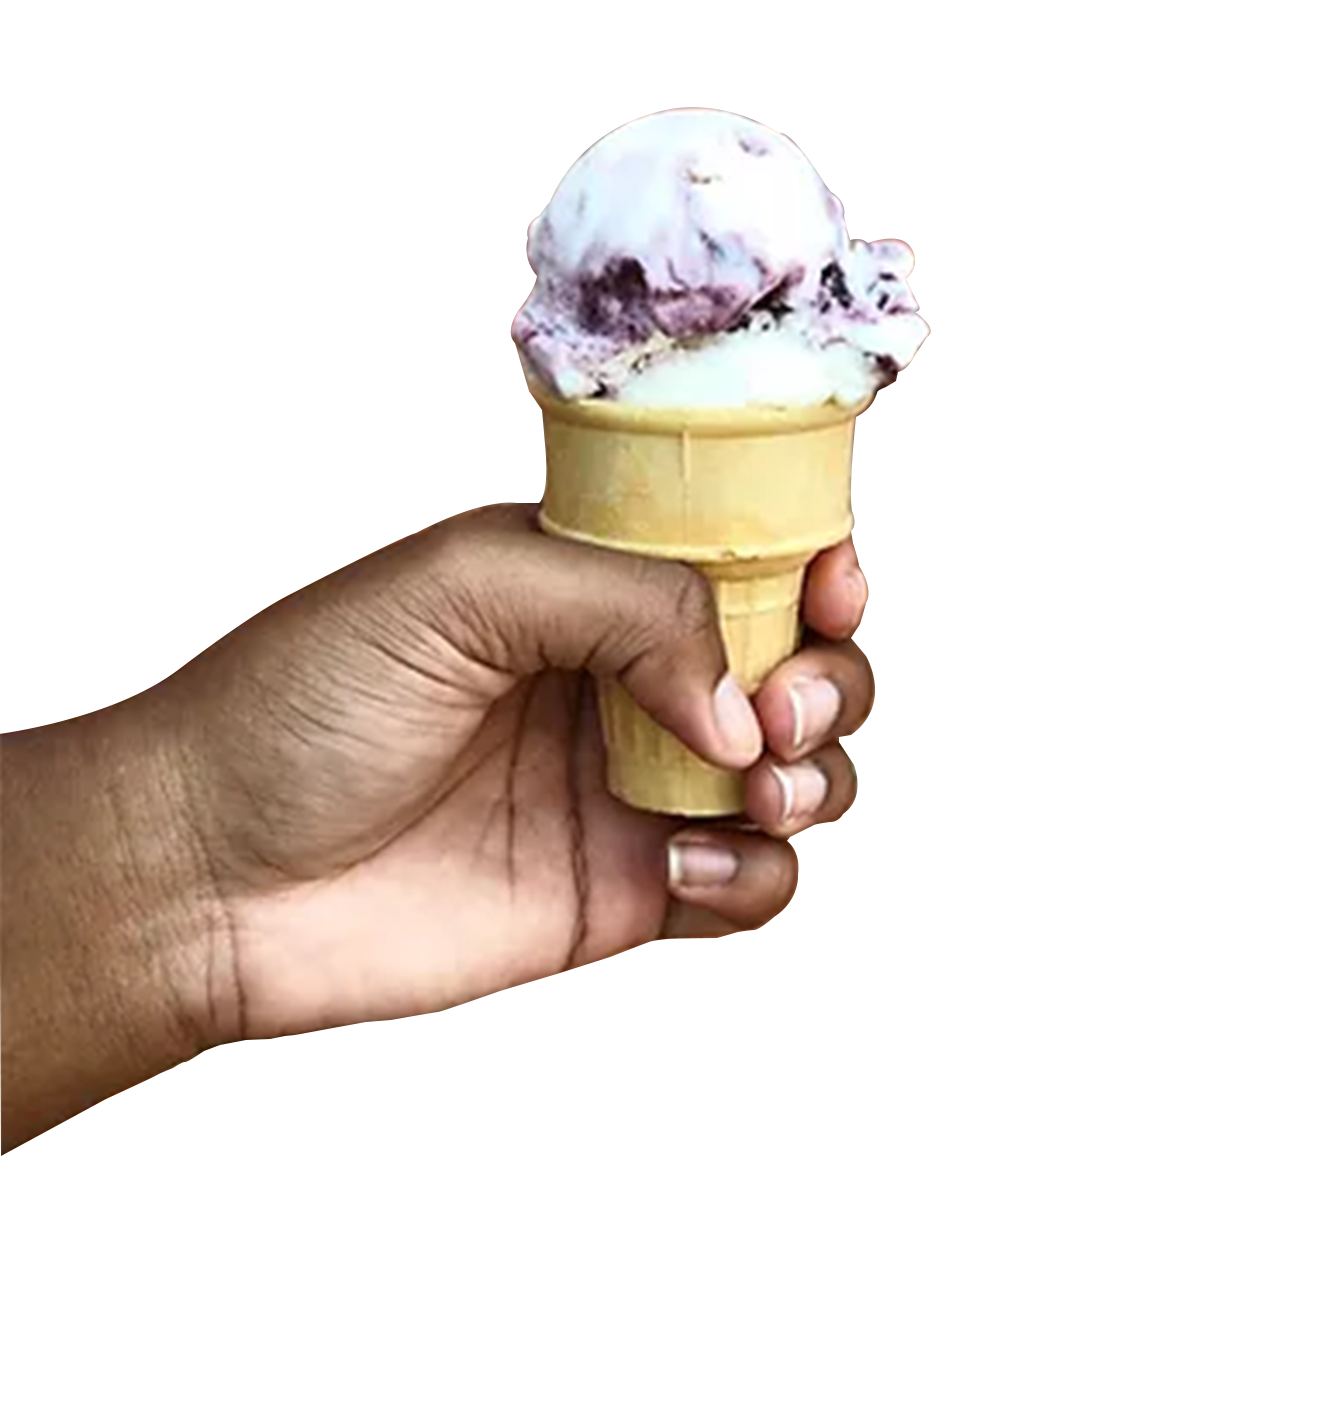 hand with ice cream